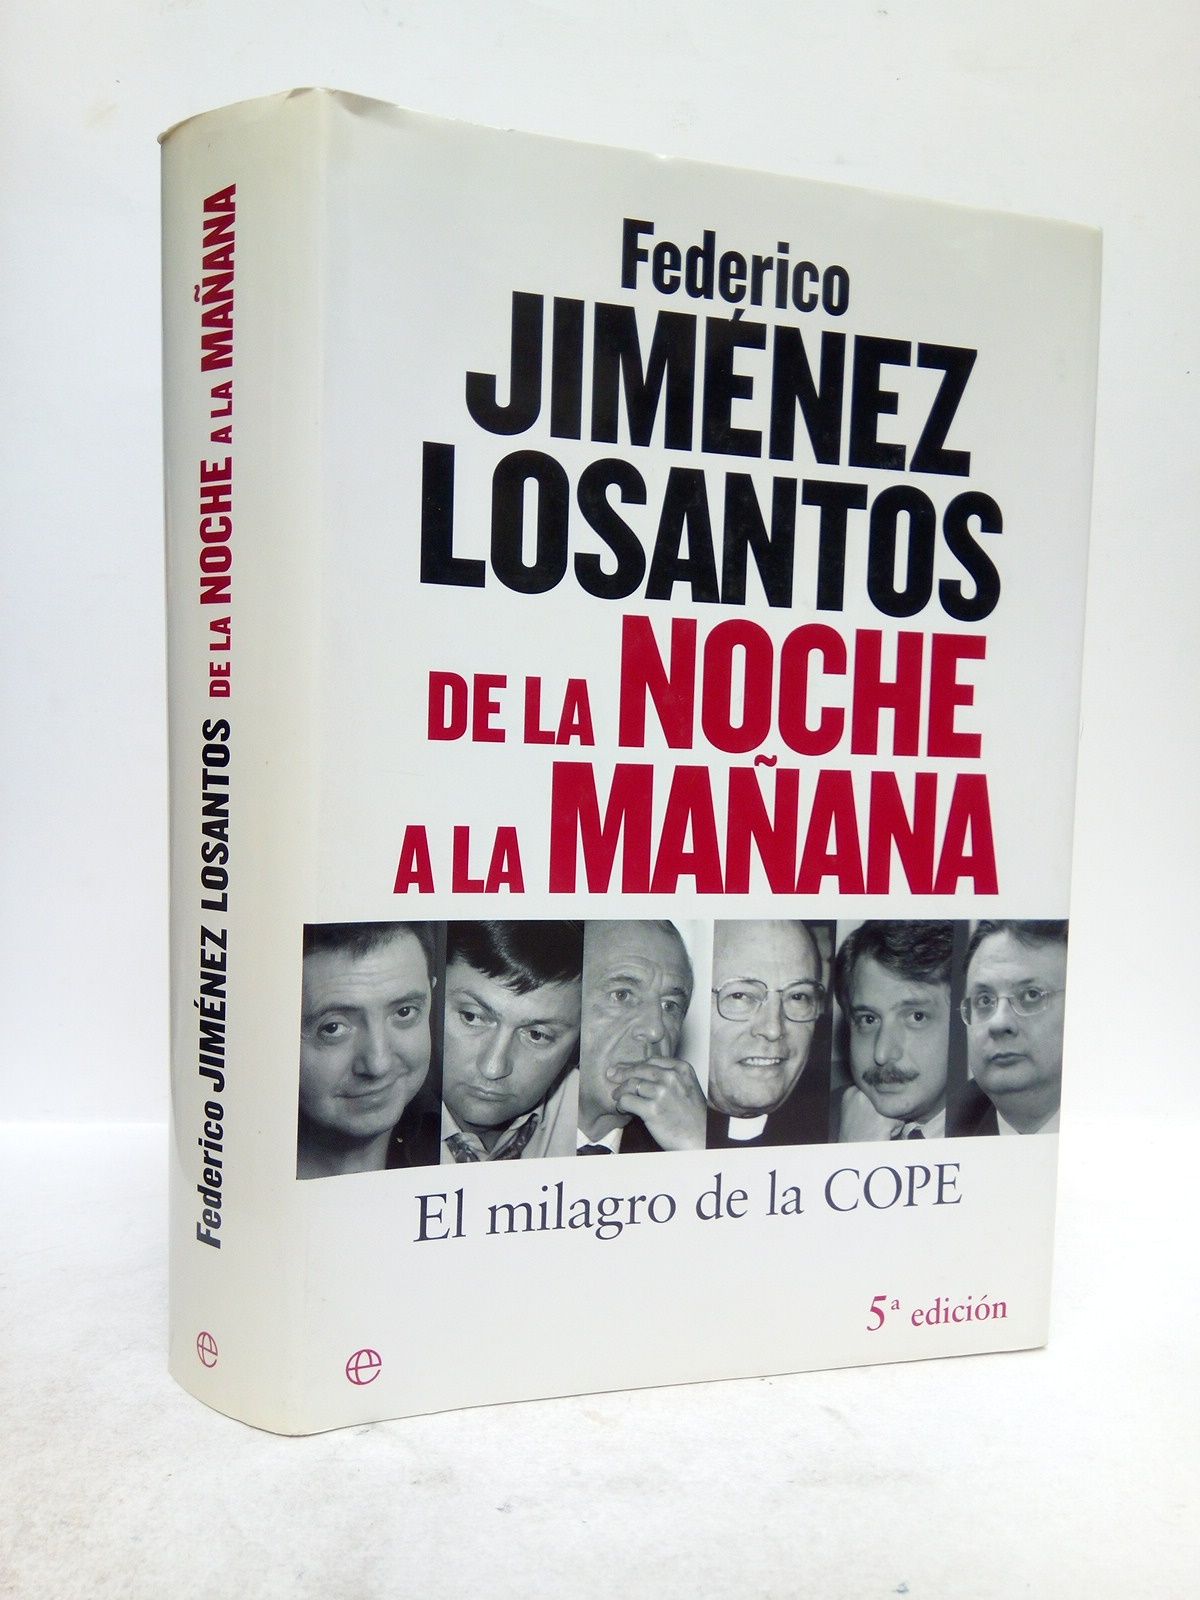 JIMENEZ LOSANTOS, Federico - De la Noche a la Maana: El milagro de la COPE